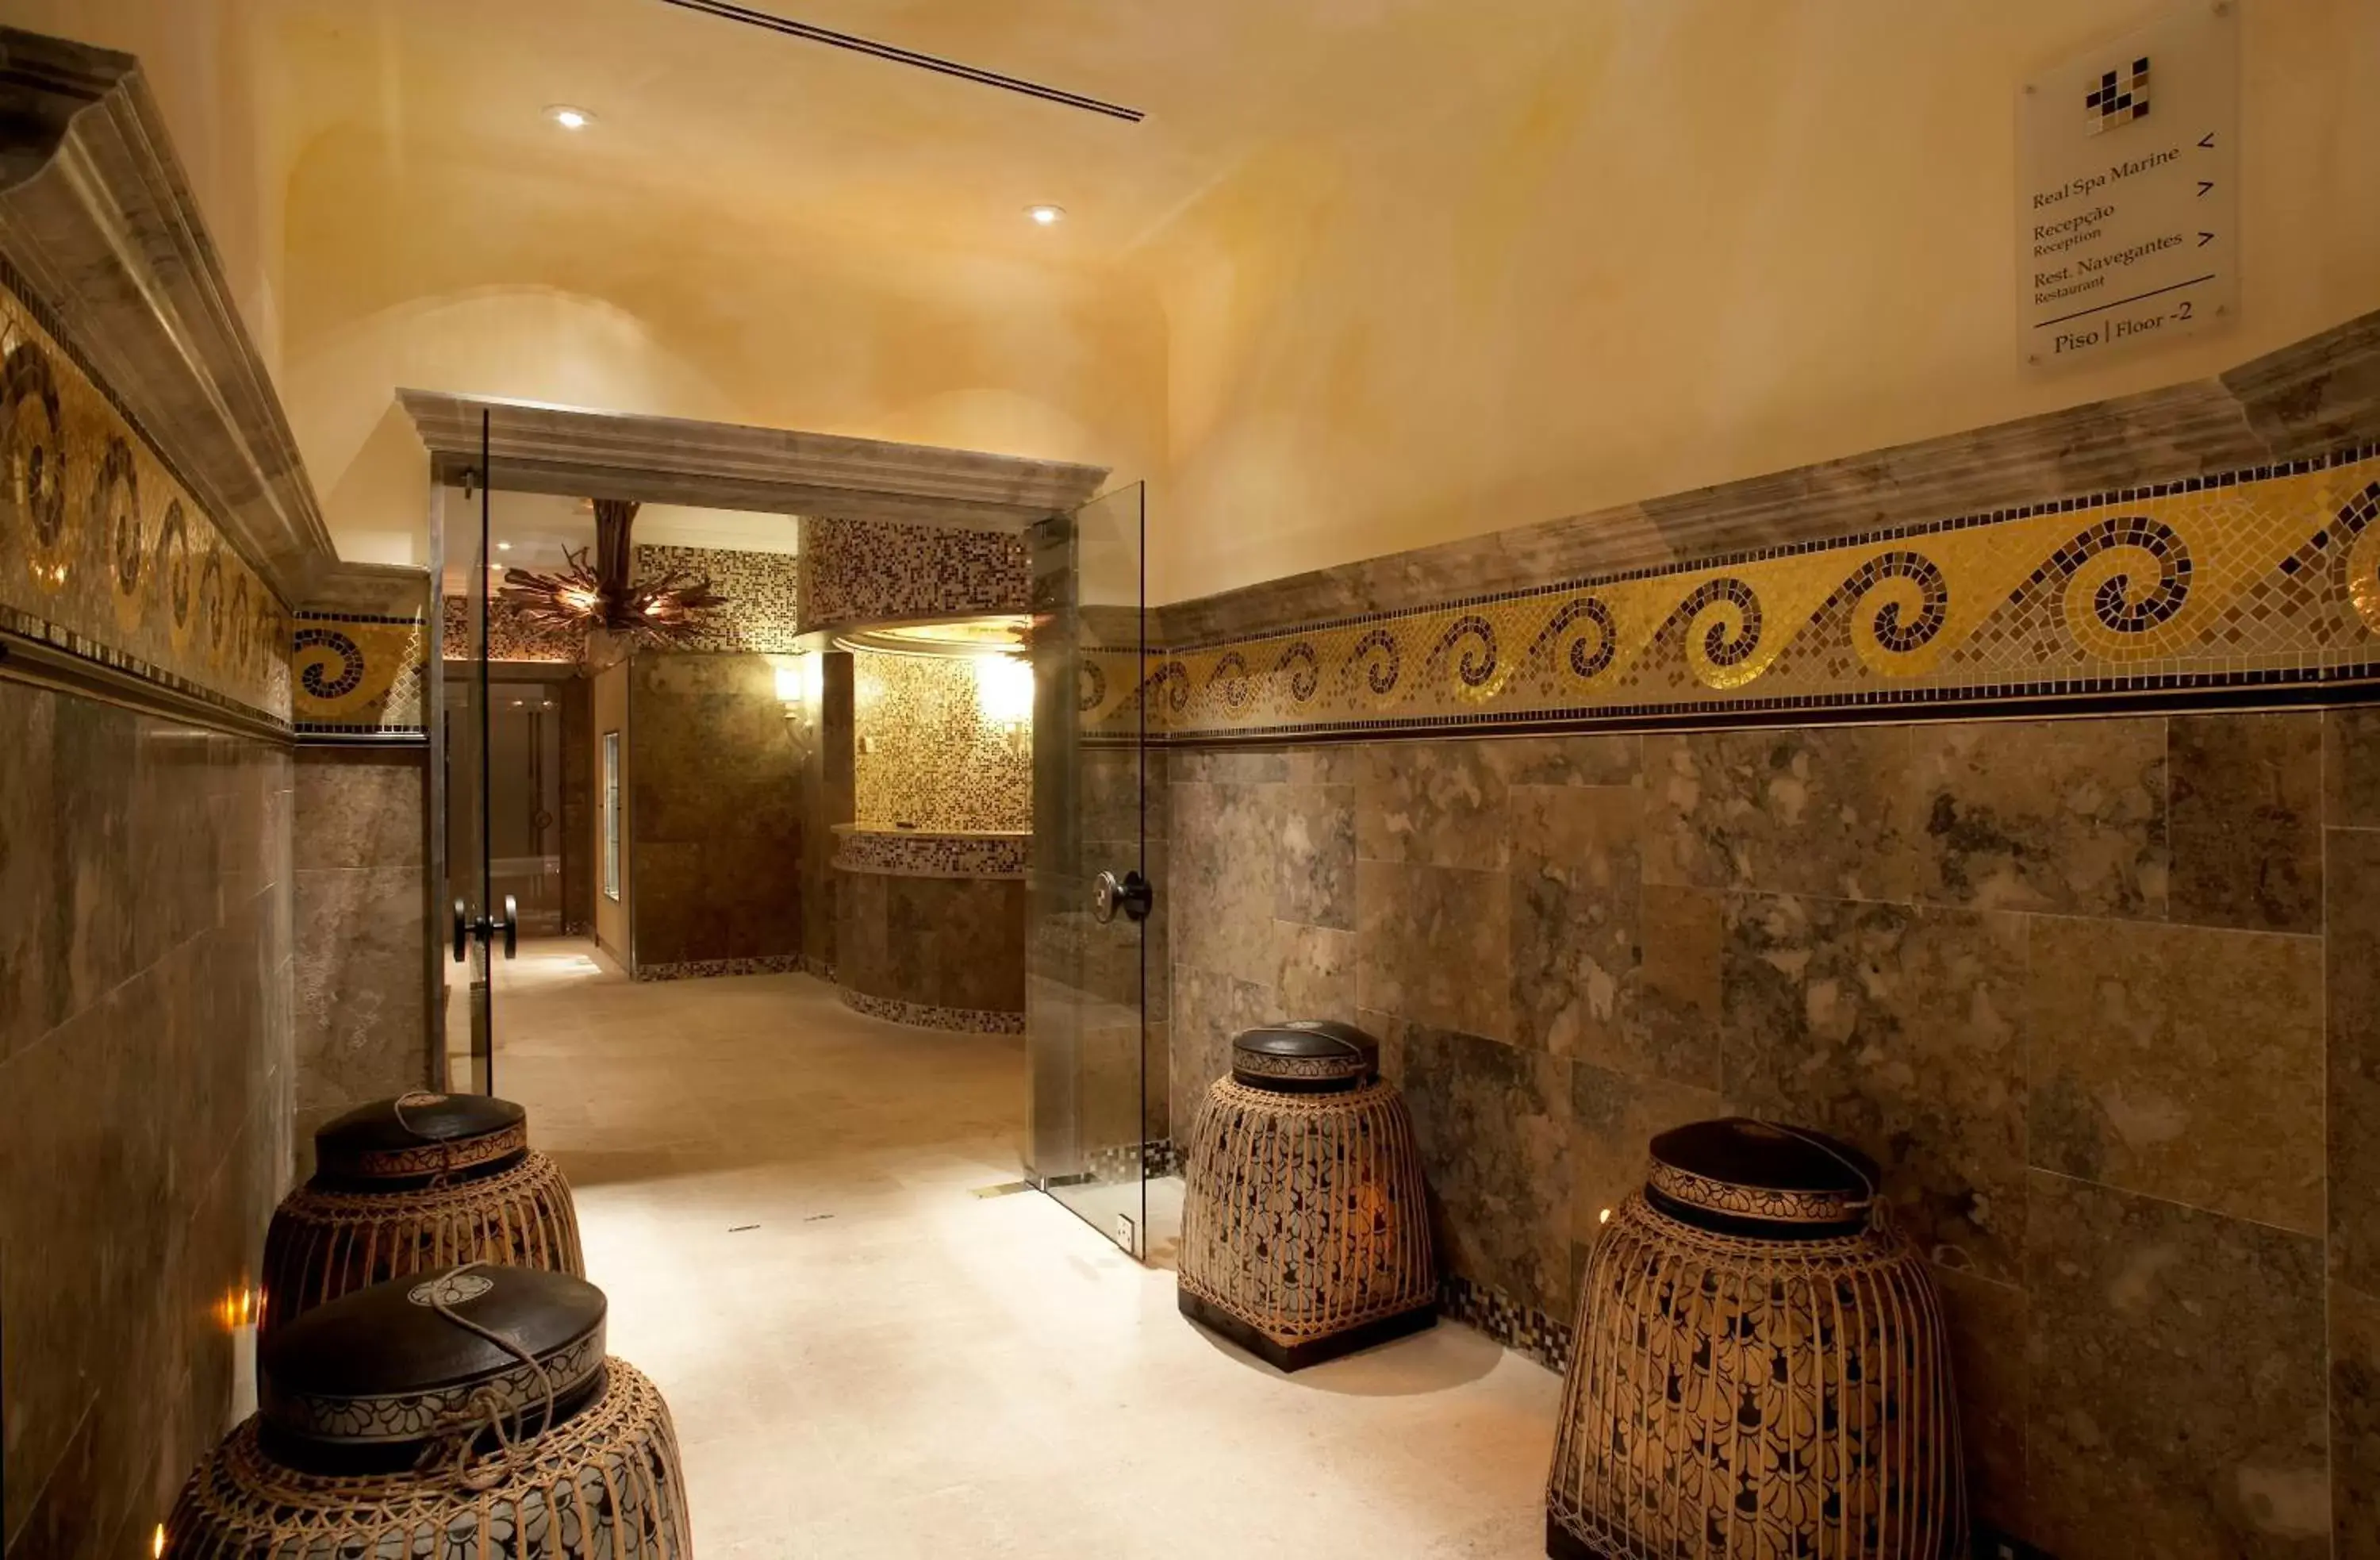 Lobby or reception, Bathroom in Grande Real Villa Itália Hotel & Spa